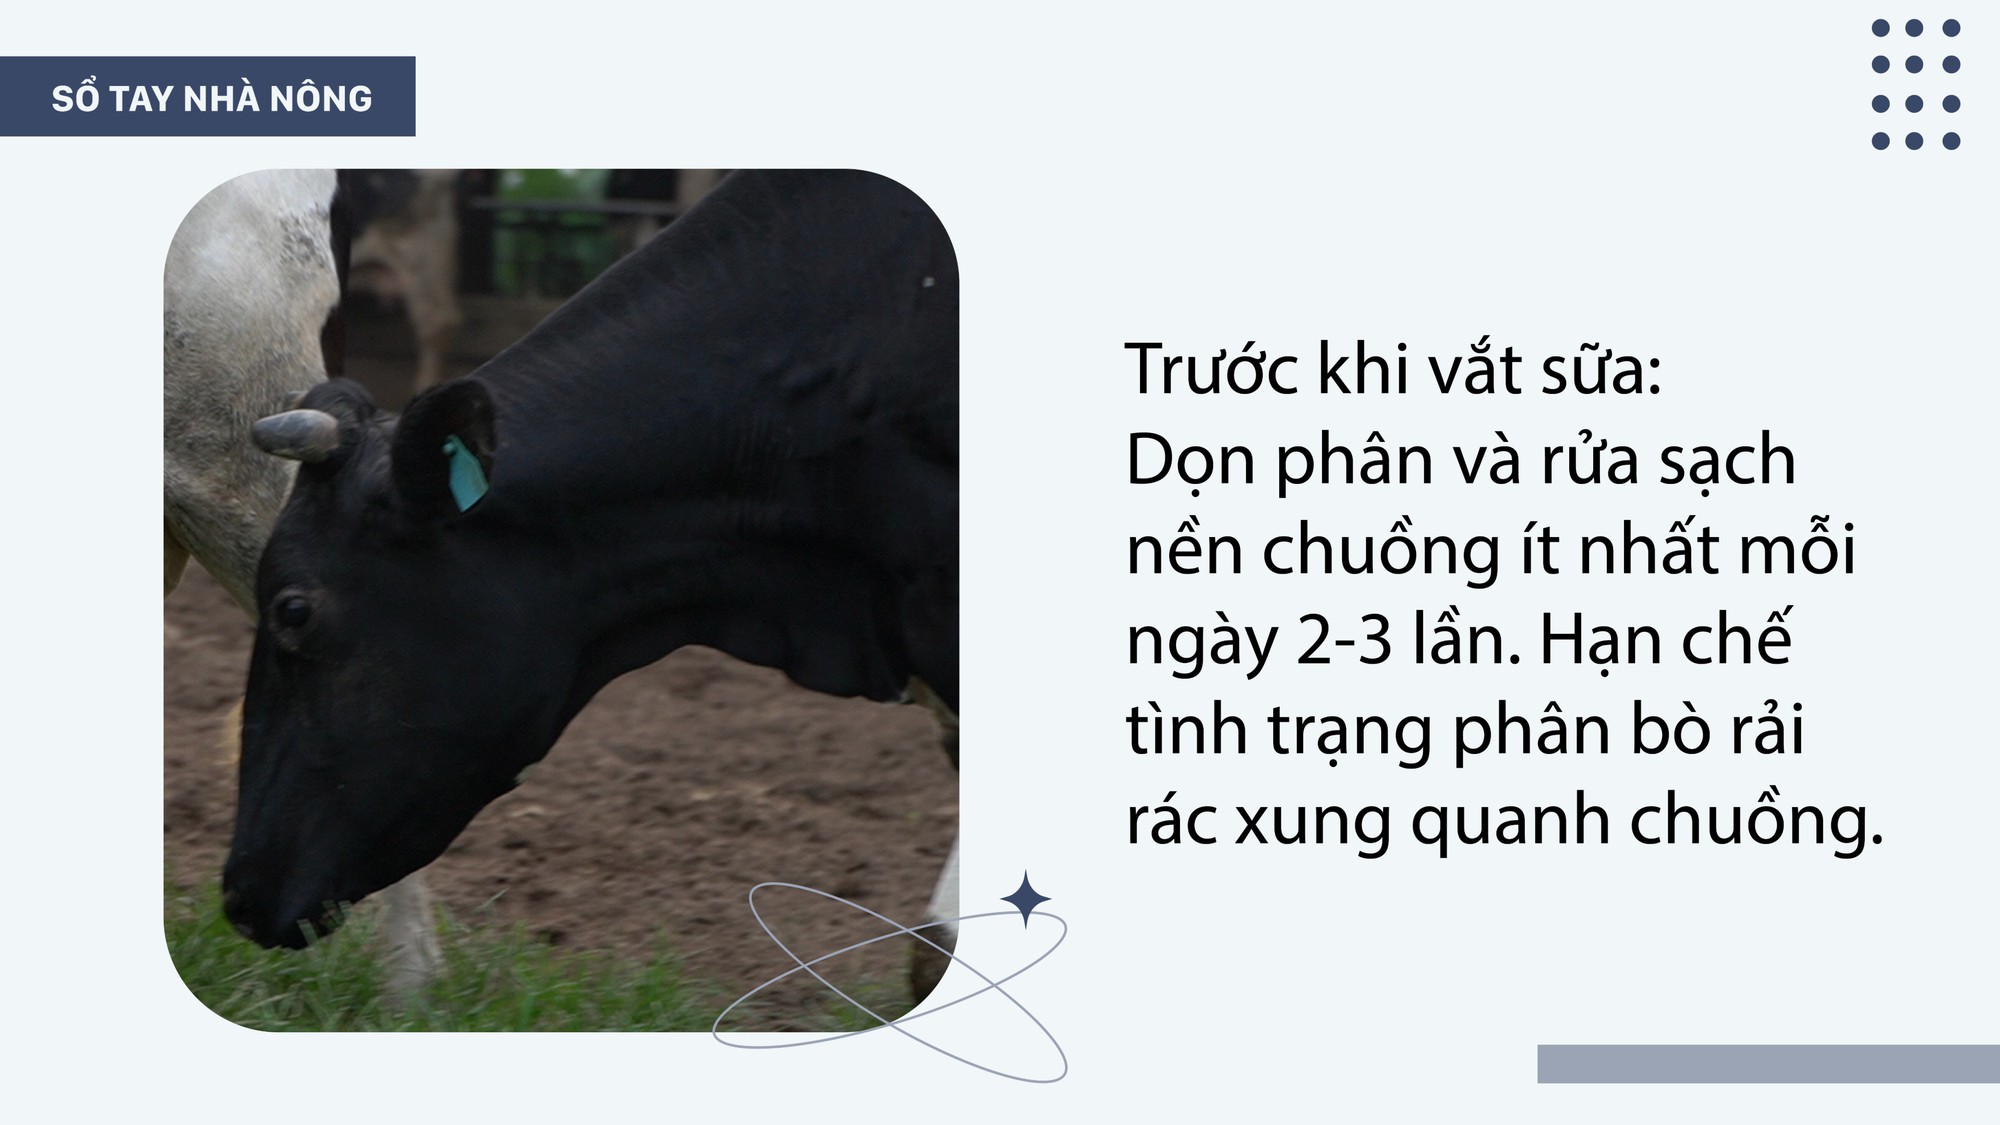 SỔ TAY NHÀ NÔNG: Hướng dẫn kỹ thuật làm chuồng nuôi bò sữa - Ảnh 2.